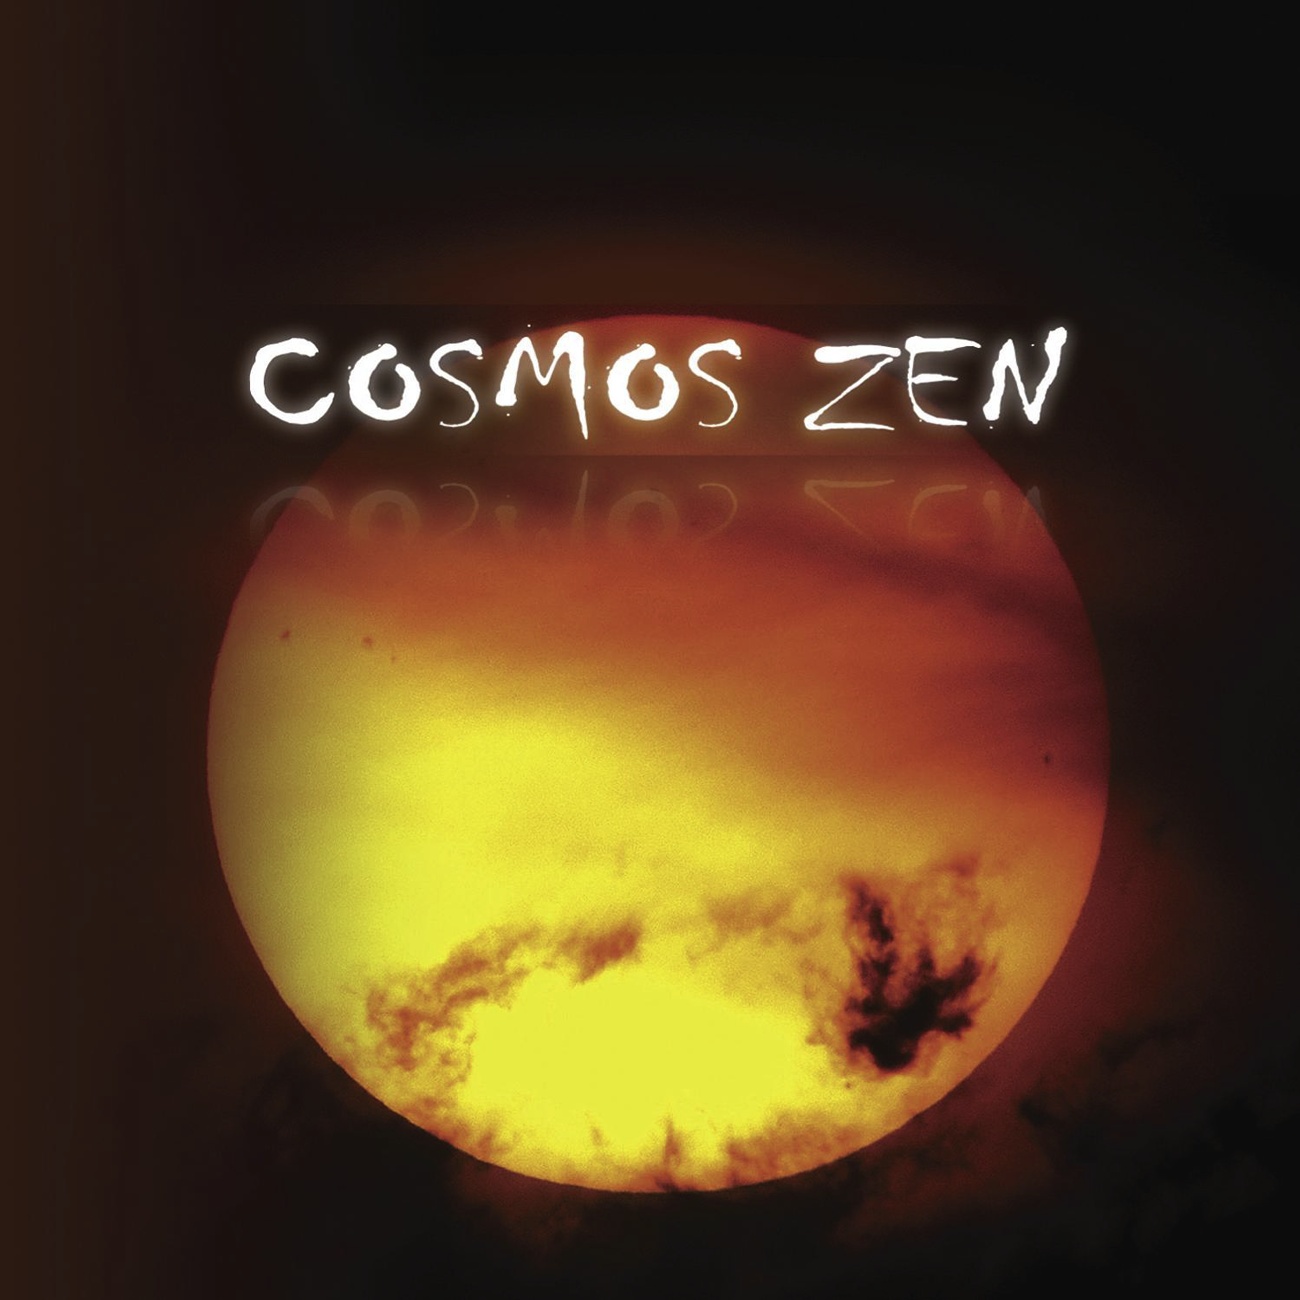 Cosmos Zen